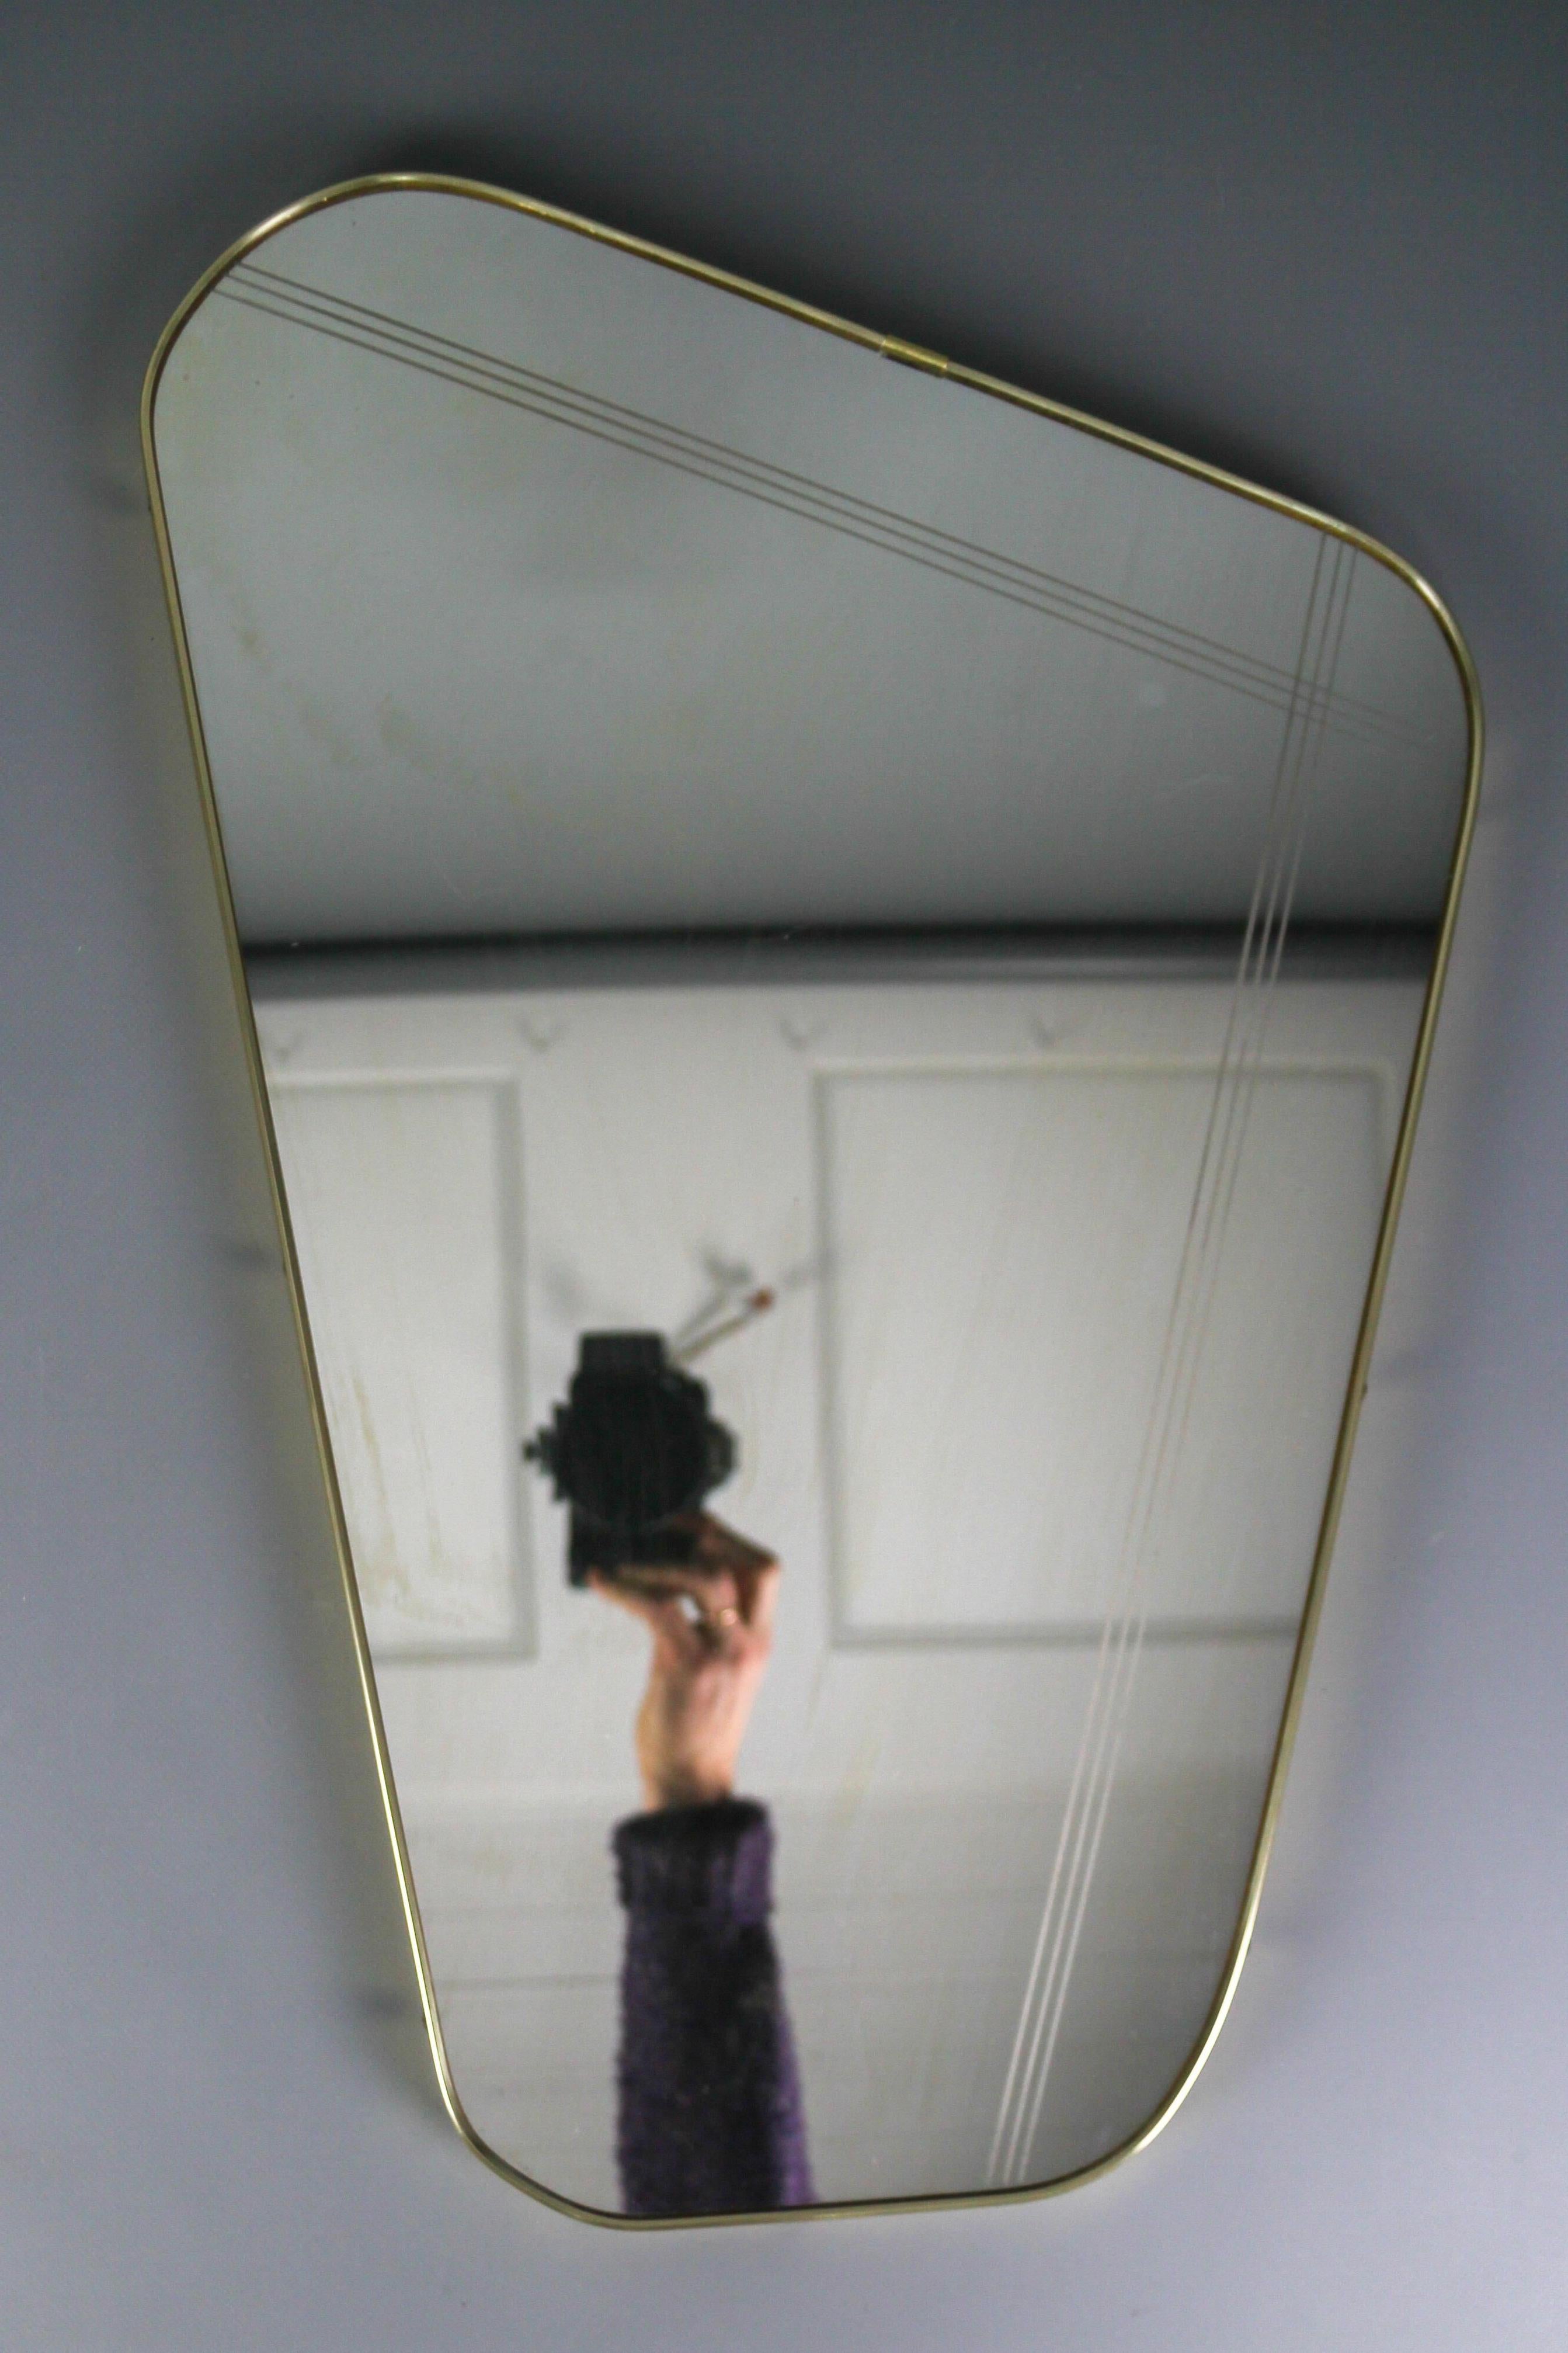 Vintage Mid-Century Modern nierenförmiger asymmetrischer Wandspiegel mit einem schönen goldfarbenen Kunststoffrahmen und Messingknöpfen, Rückwand aus Furnier. Deutschland, um die 1960er Jahre.
Abmessungen: Höhe: 57 cm / 22.44 in; Breite: 38,5 cm /